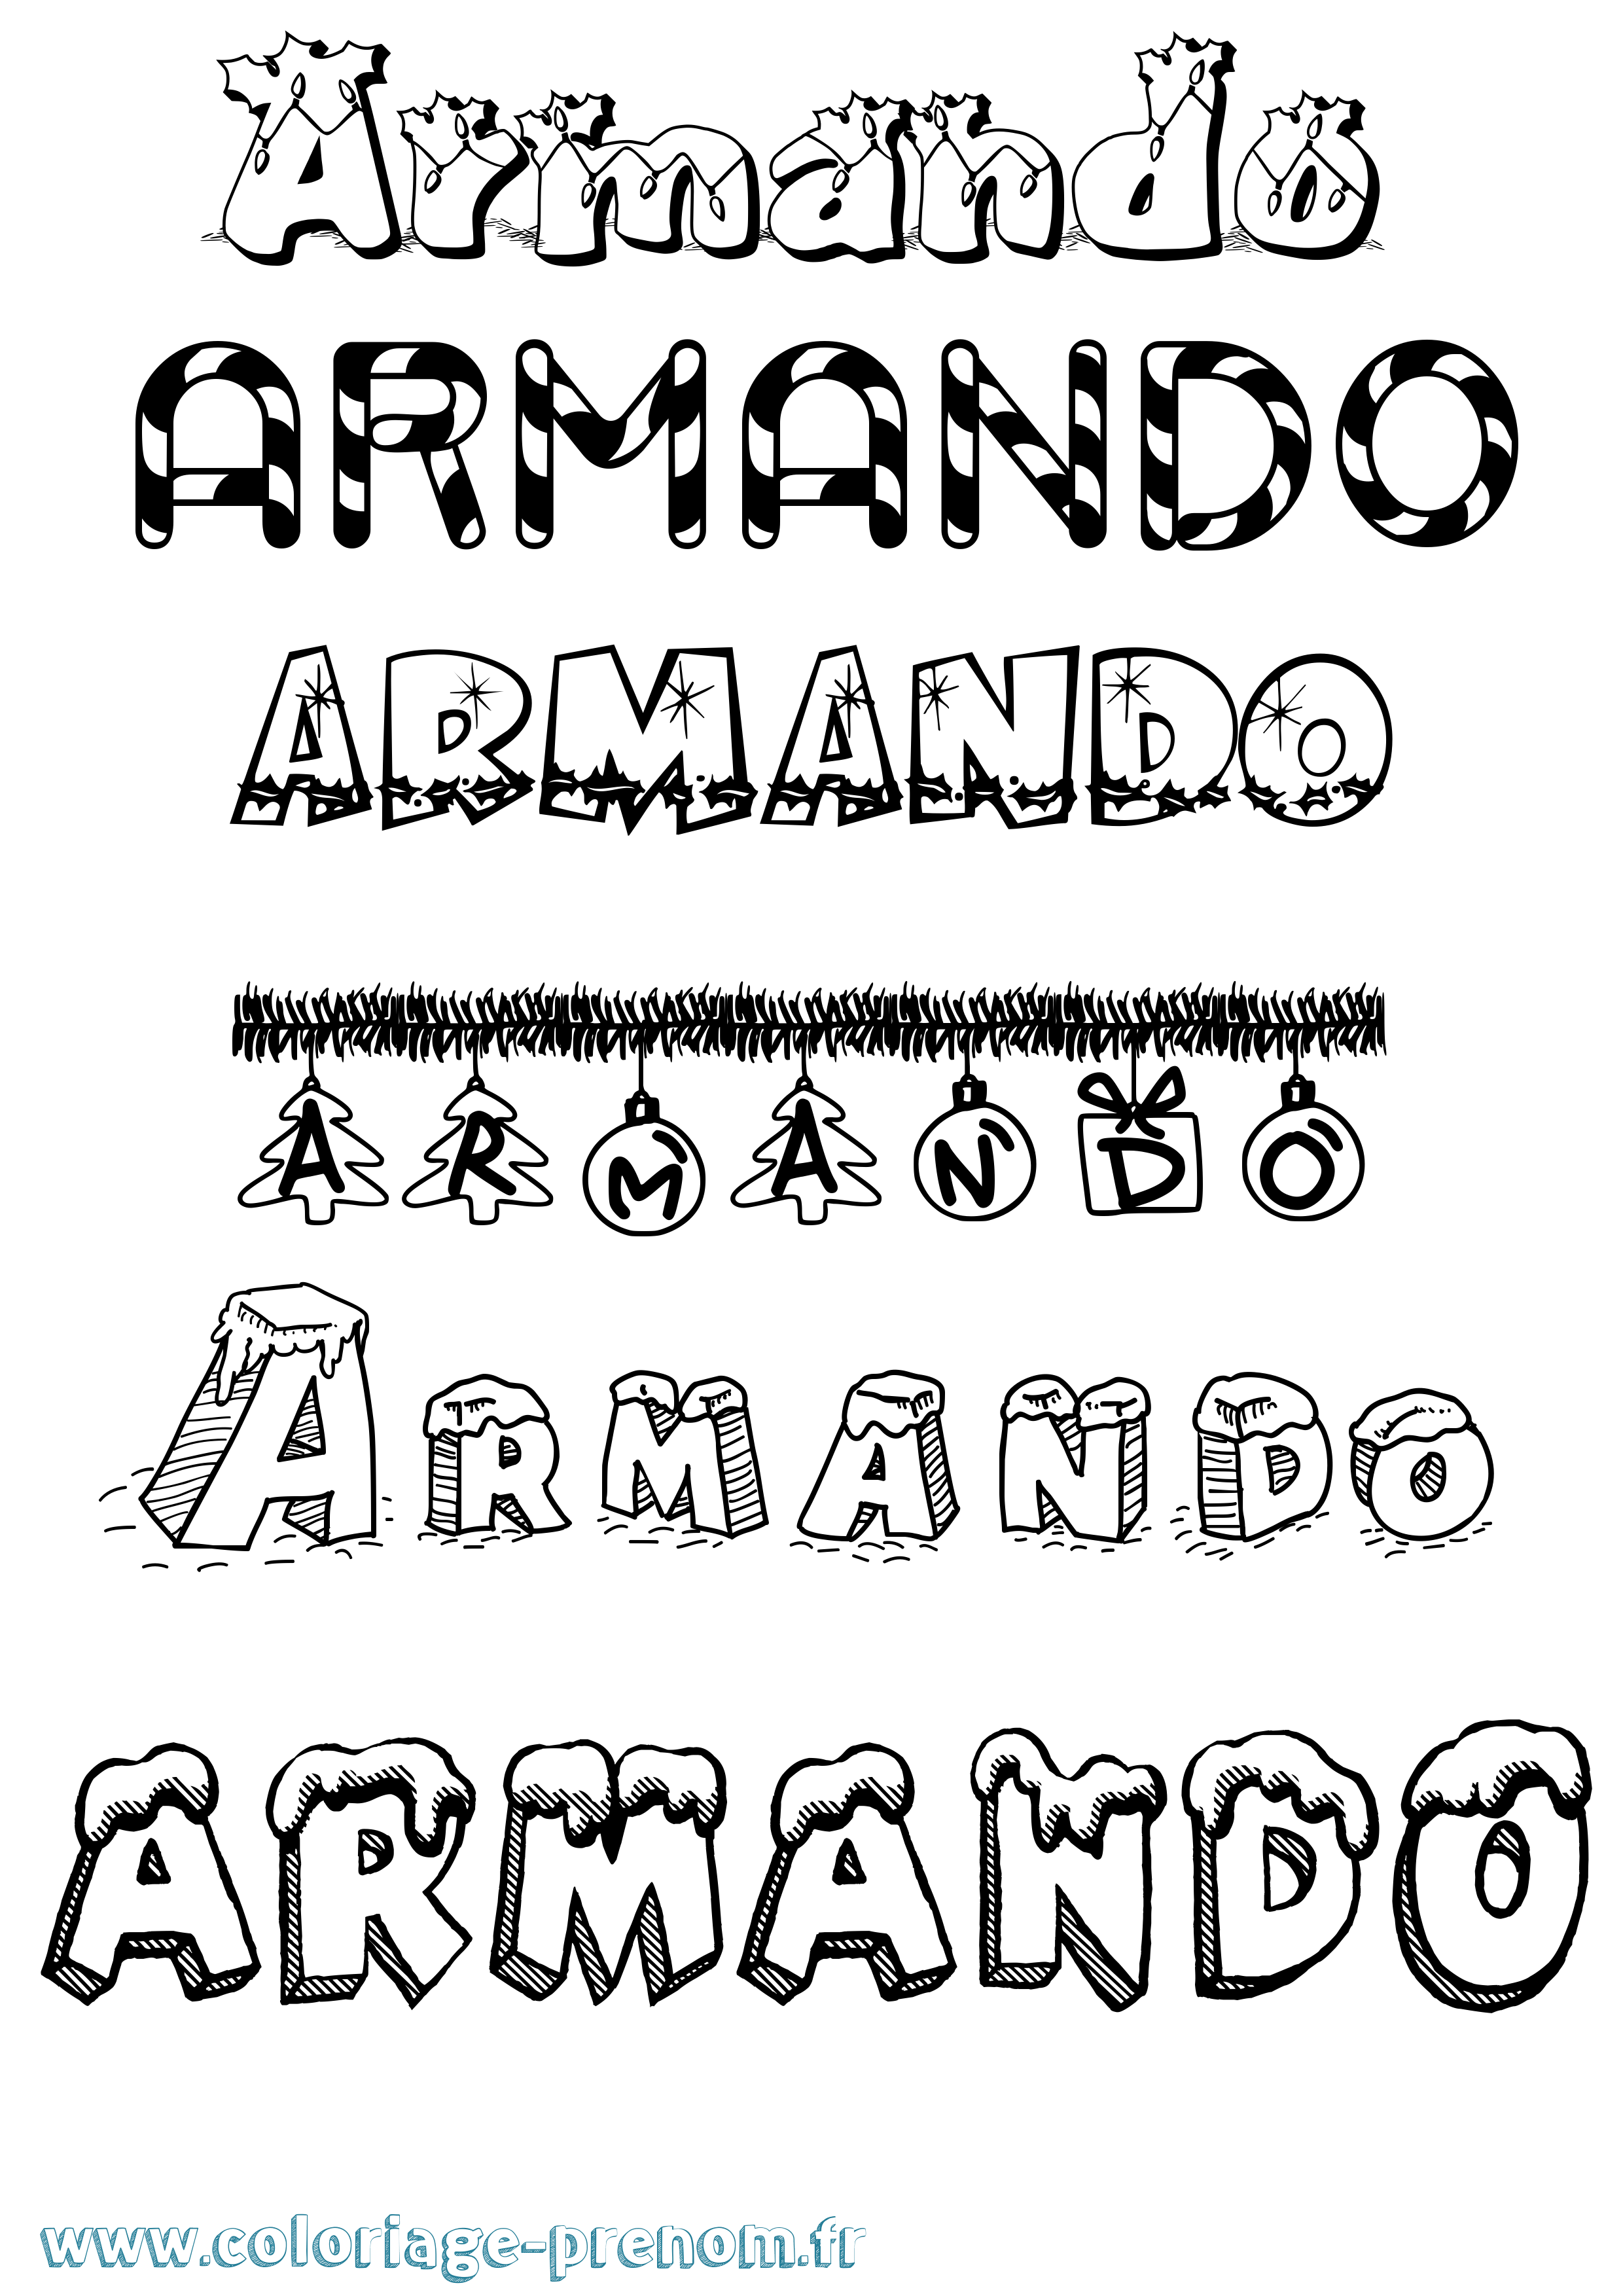 Coloriage prénom Armando Noël